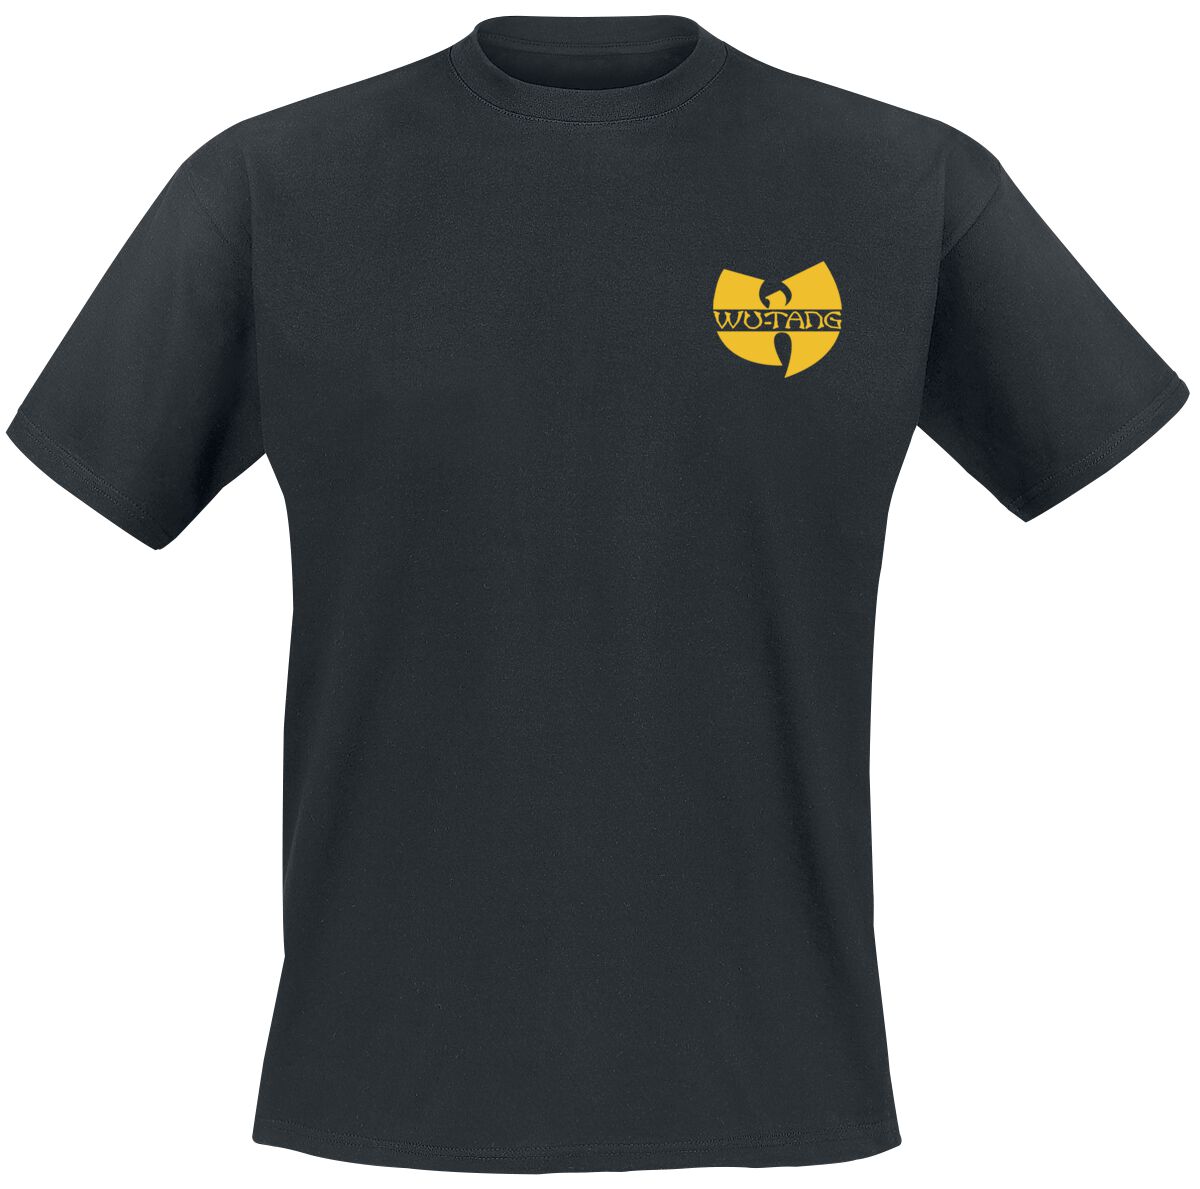 Wu-Tang Clan T-Shirt - Black Logo - S bis XXL - für Männer - Größe XL - schwarz  - Lizenziertes Merchandise!